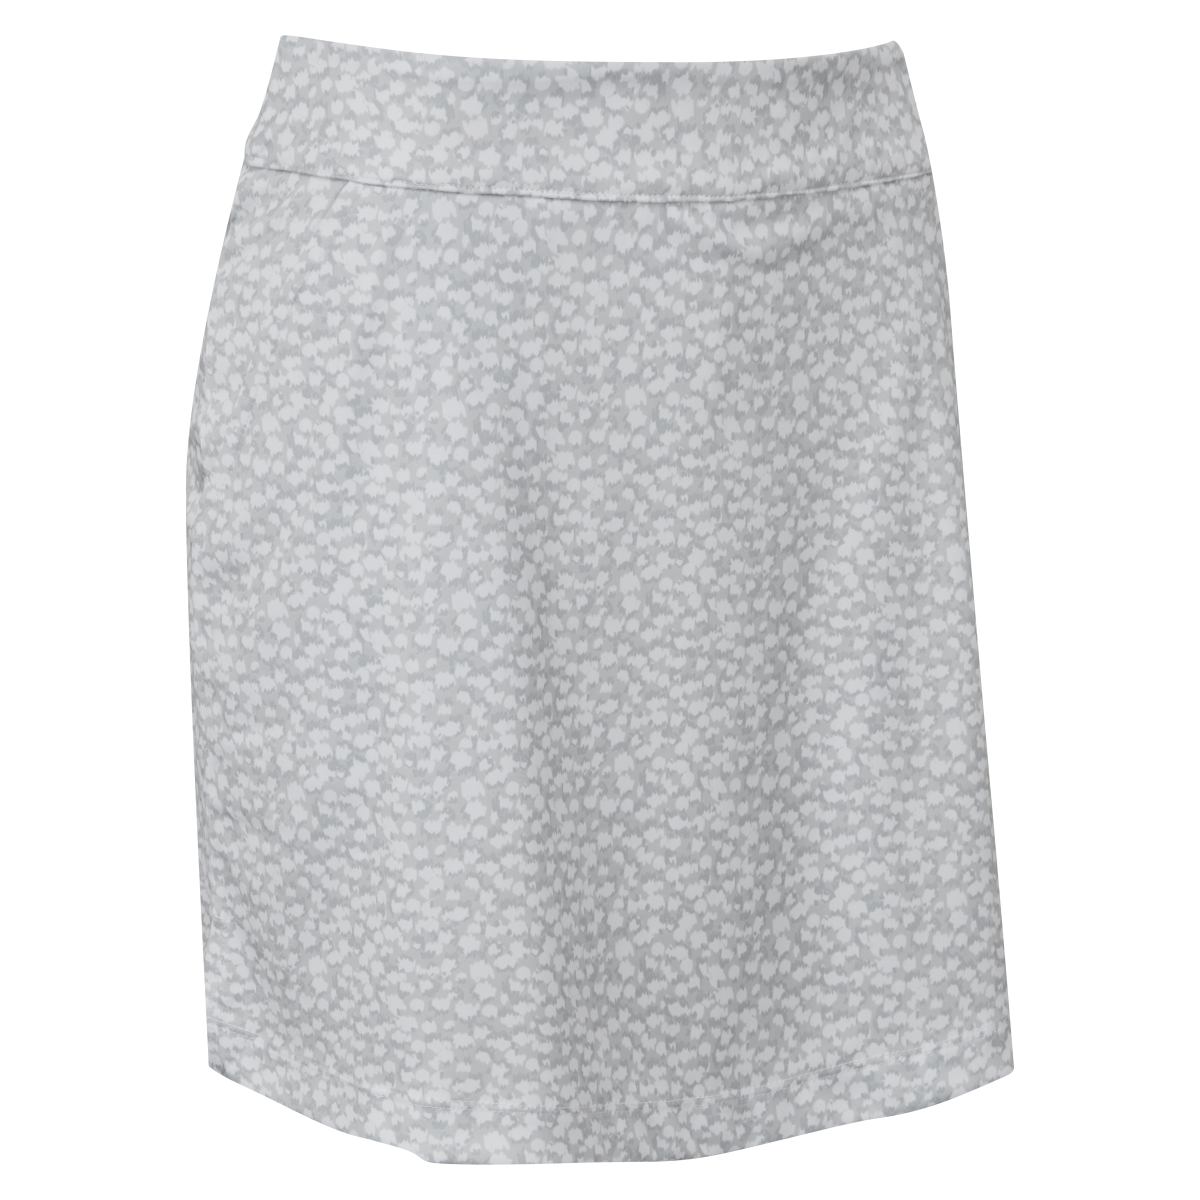 Levně FootJoy Interlock Print dámská golfová sukně, šedá/bílá